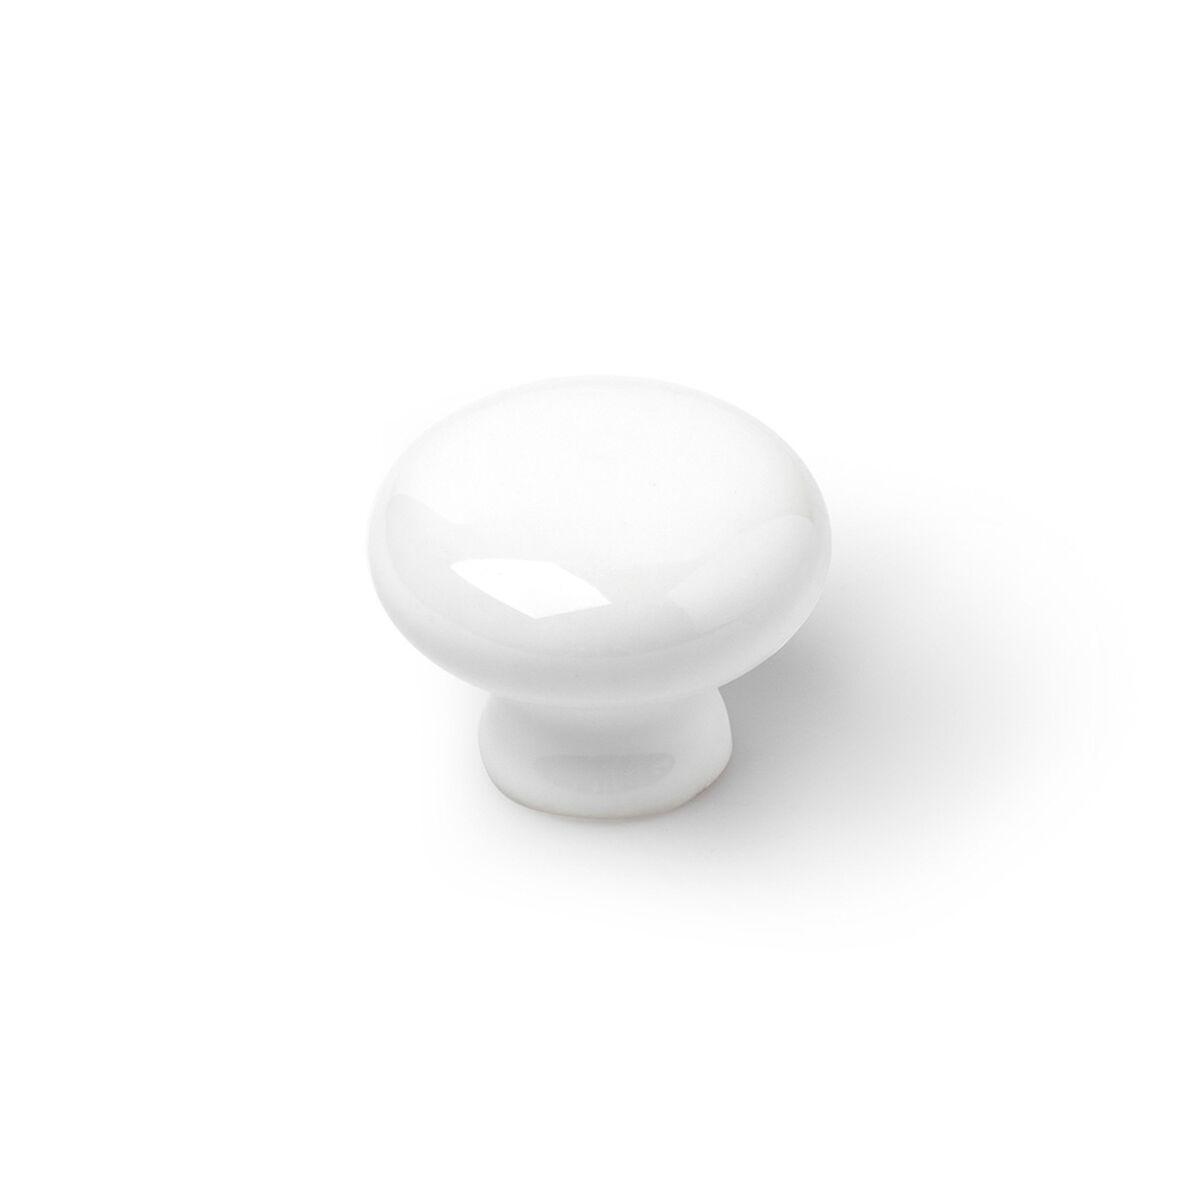 Dørhåndtag Rei 821 Cirkulær Porcelæn Hvid 4 enheder (Ø 3,5 x 2,6 cm)